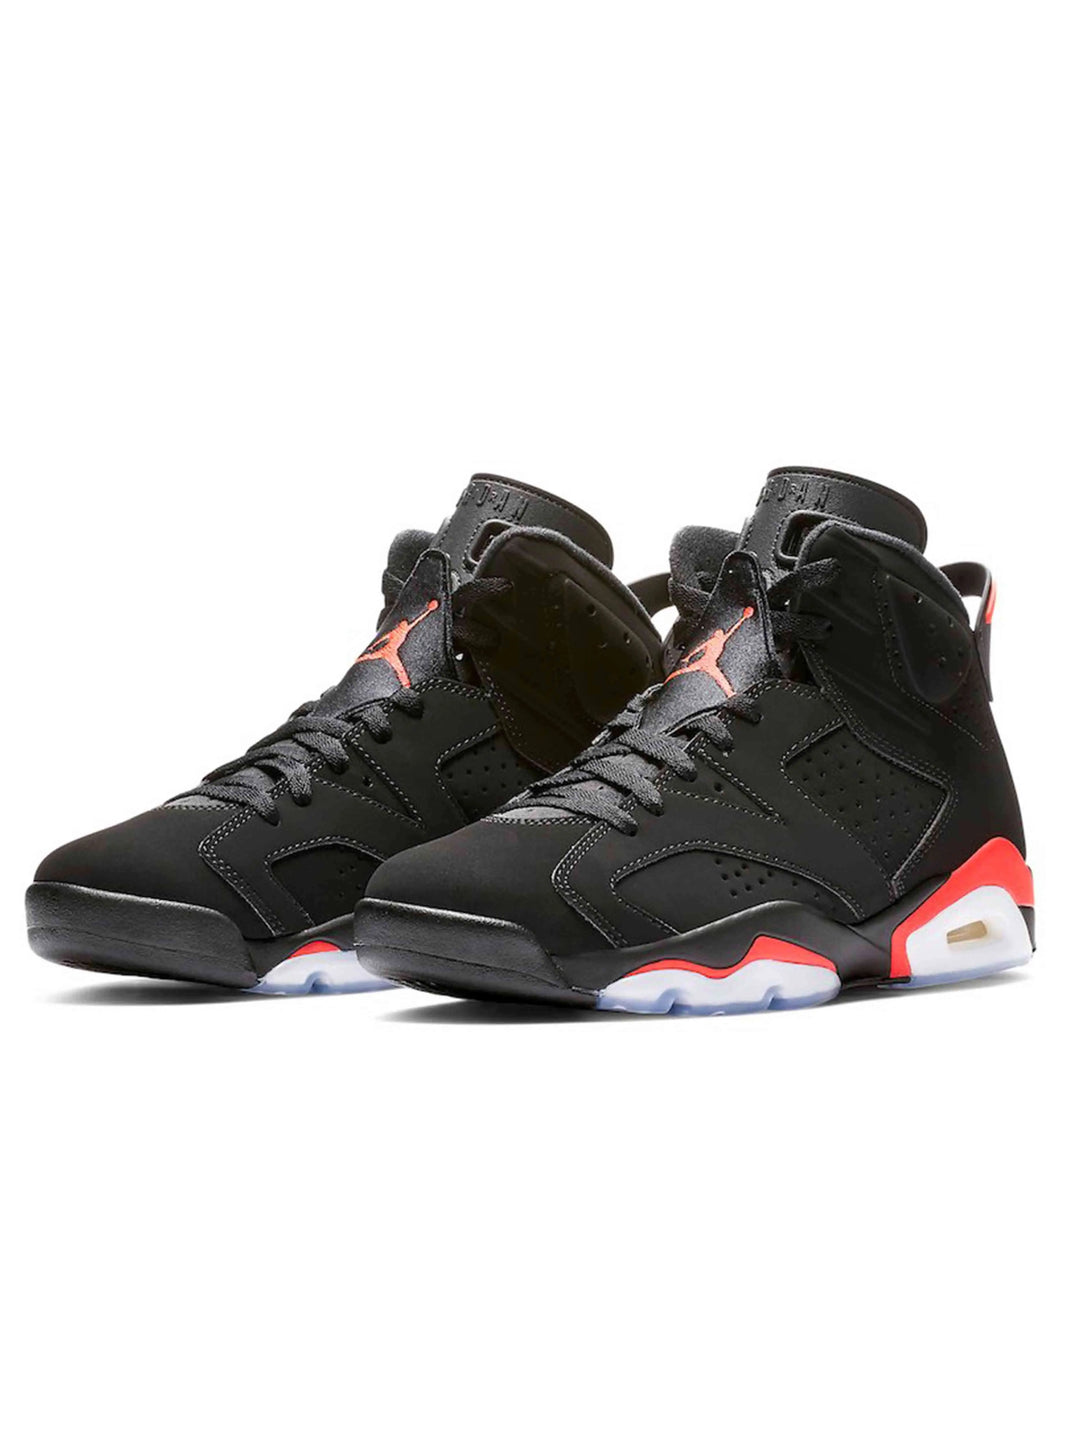 Nike Air Jordan 6 Retro Black Infrared [2019] [USED] Prior